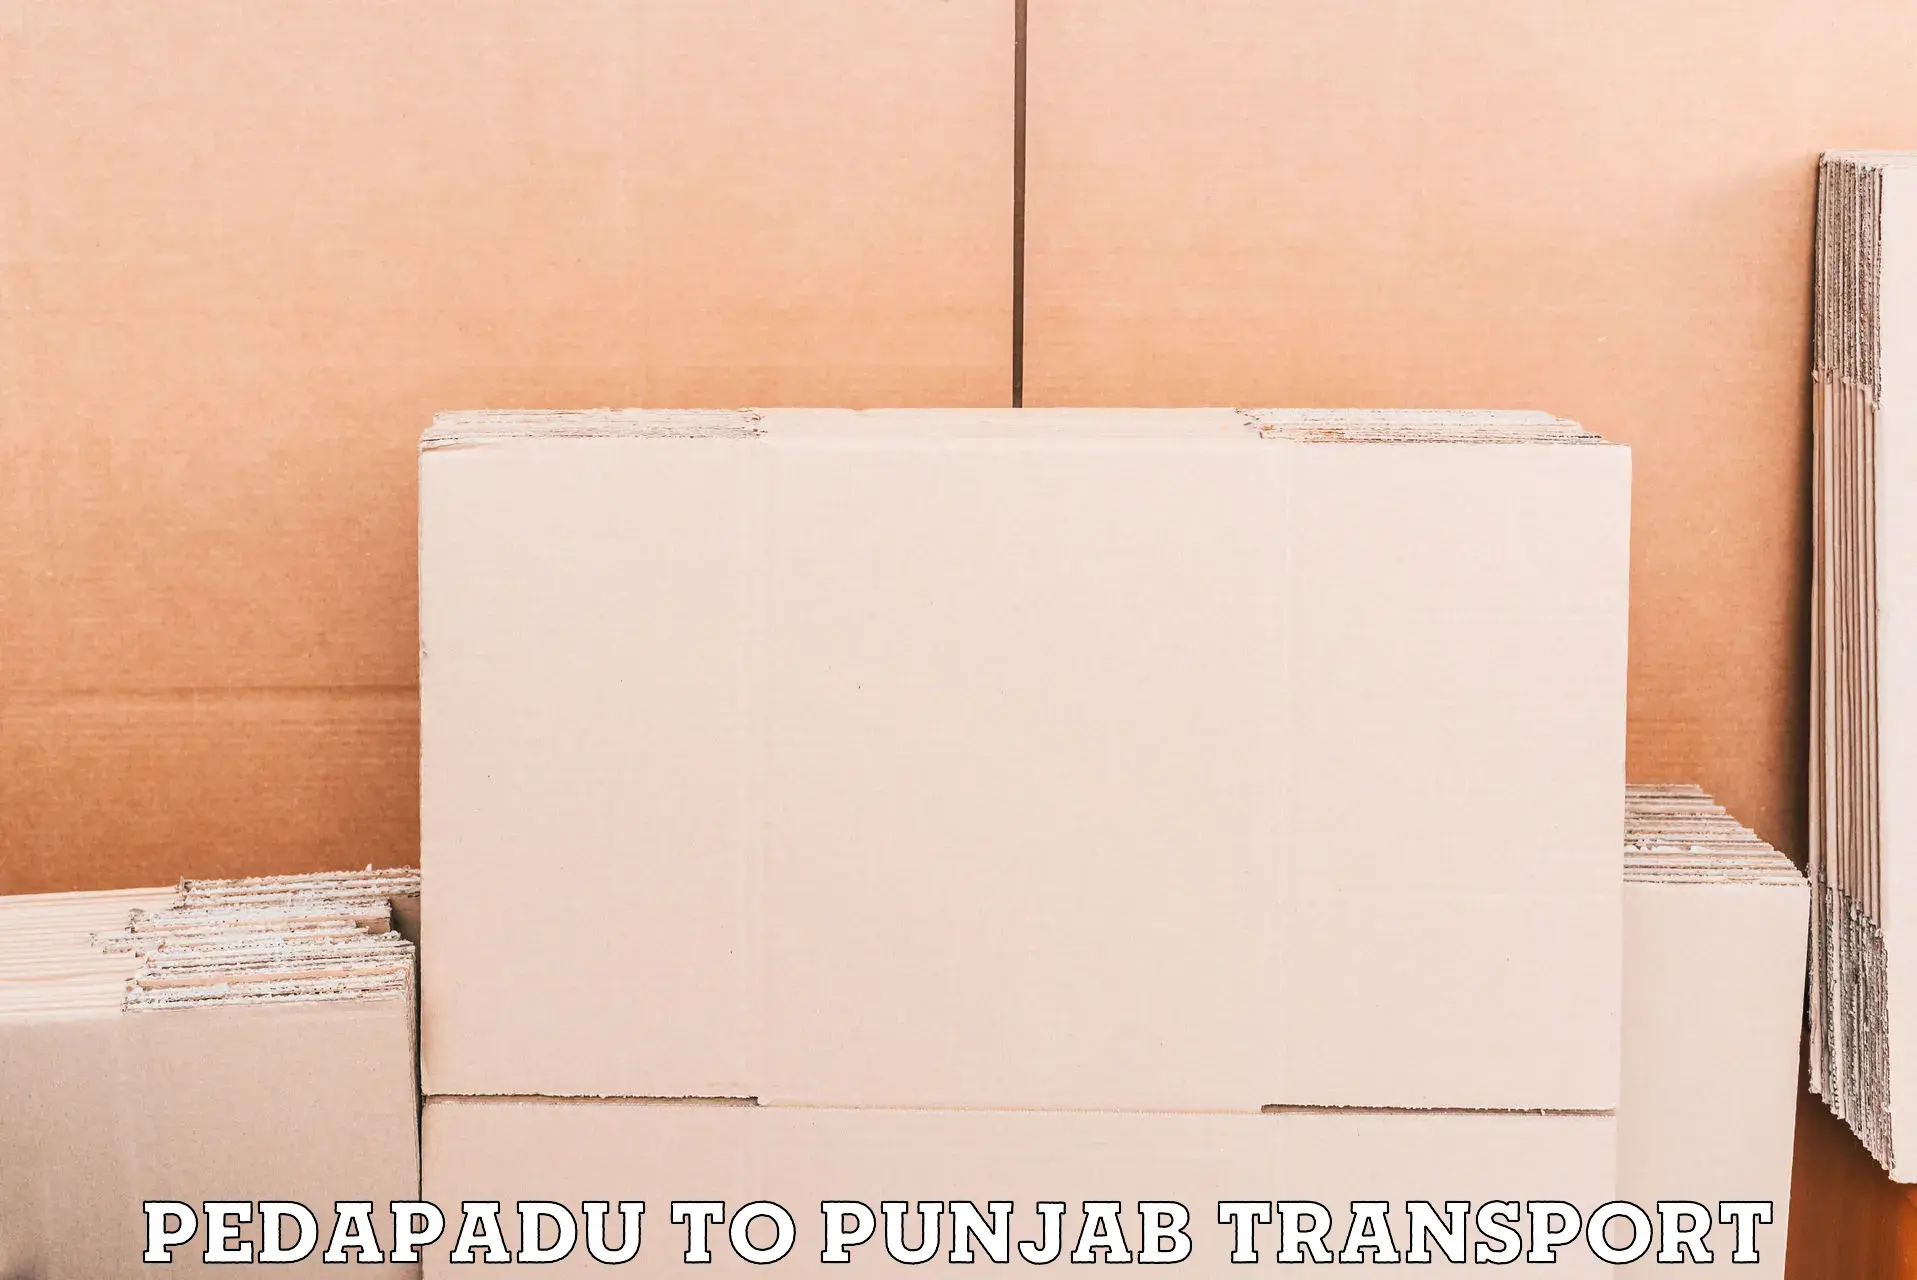 International cargo transportation services Pedapadu to Jhunir